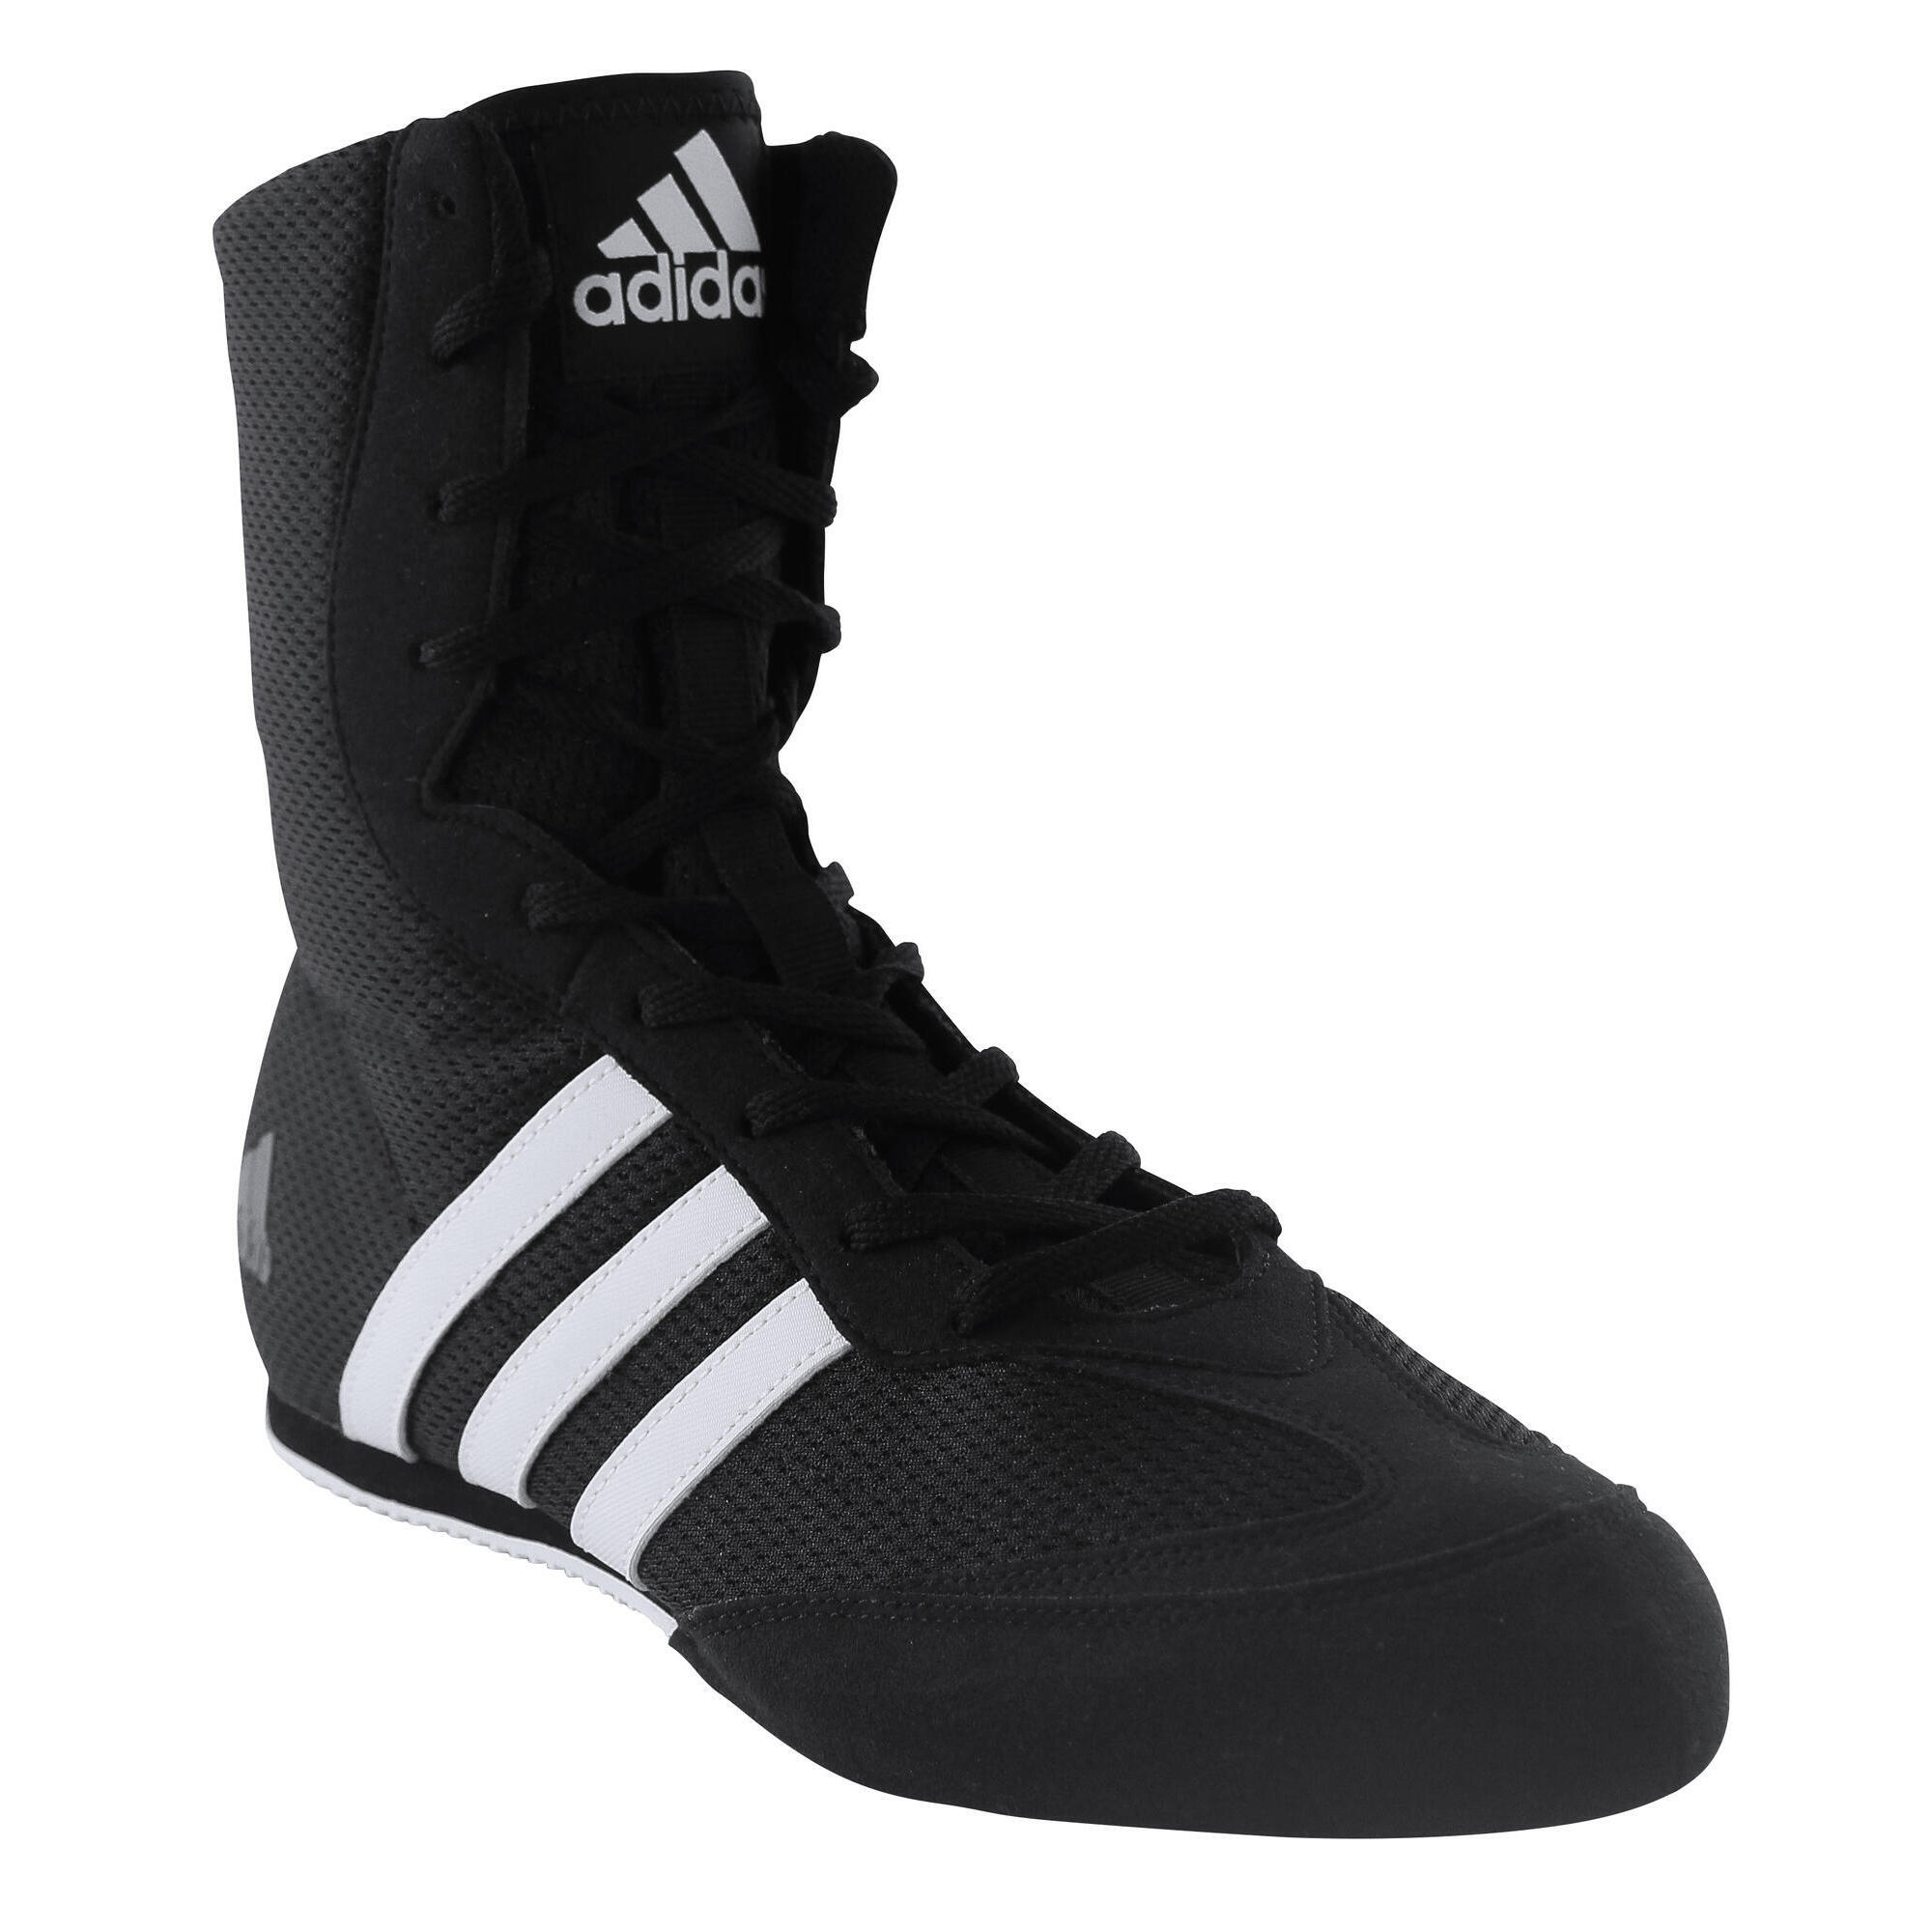 adidas boxe shoes